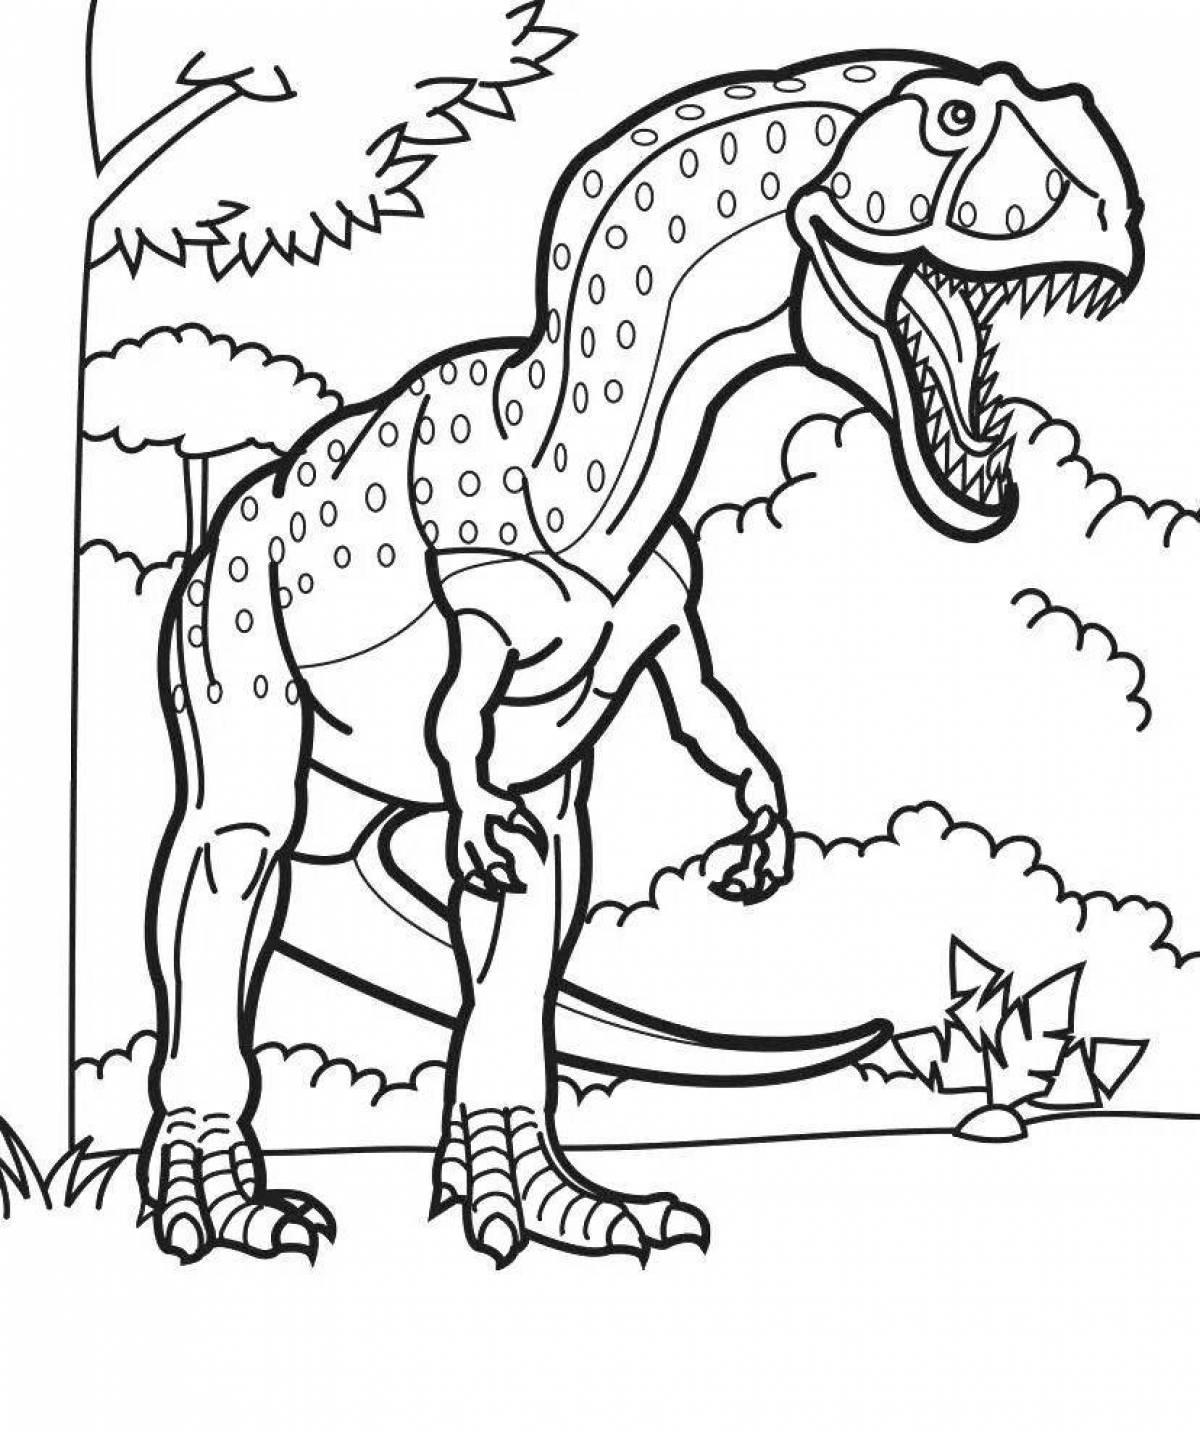 A fun dinosaur coloring book